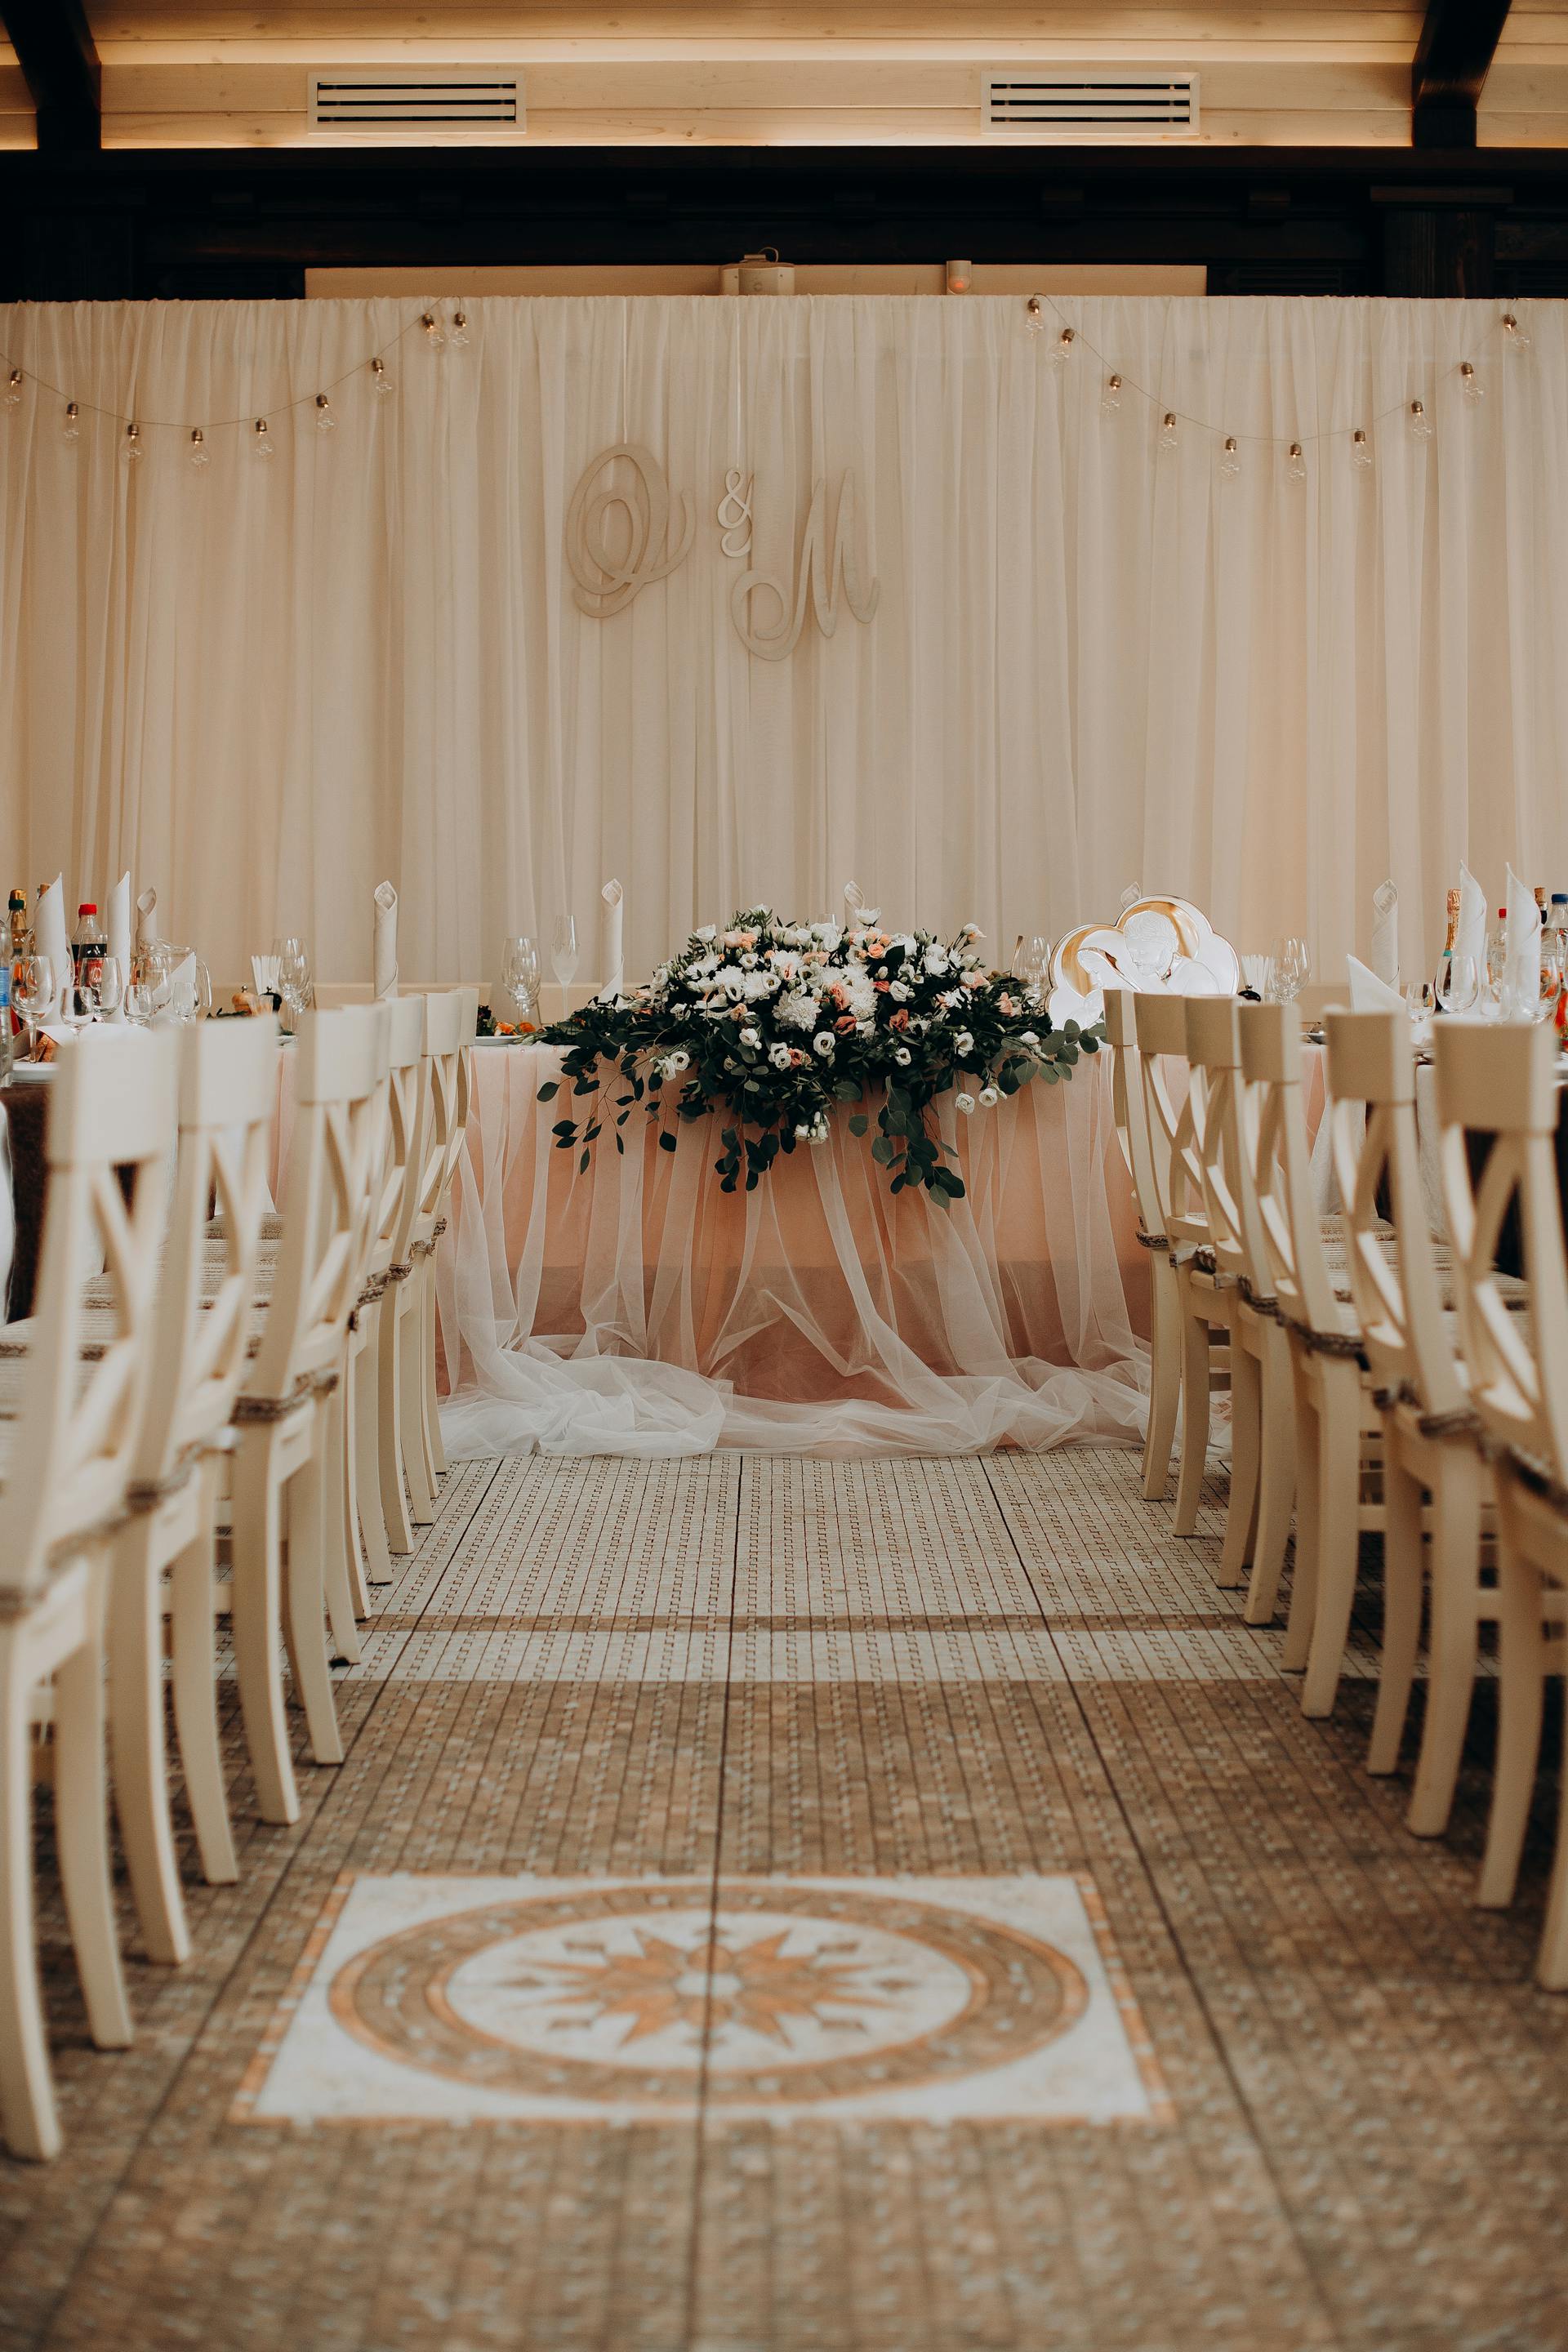 Ein Hochzeitssaal | Quelle: Pexels